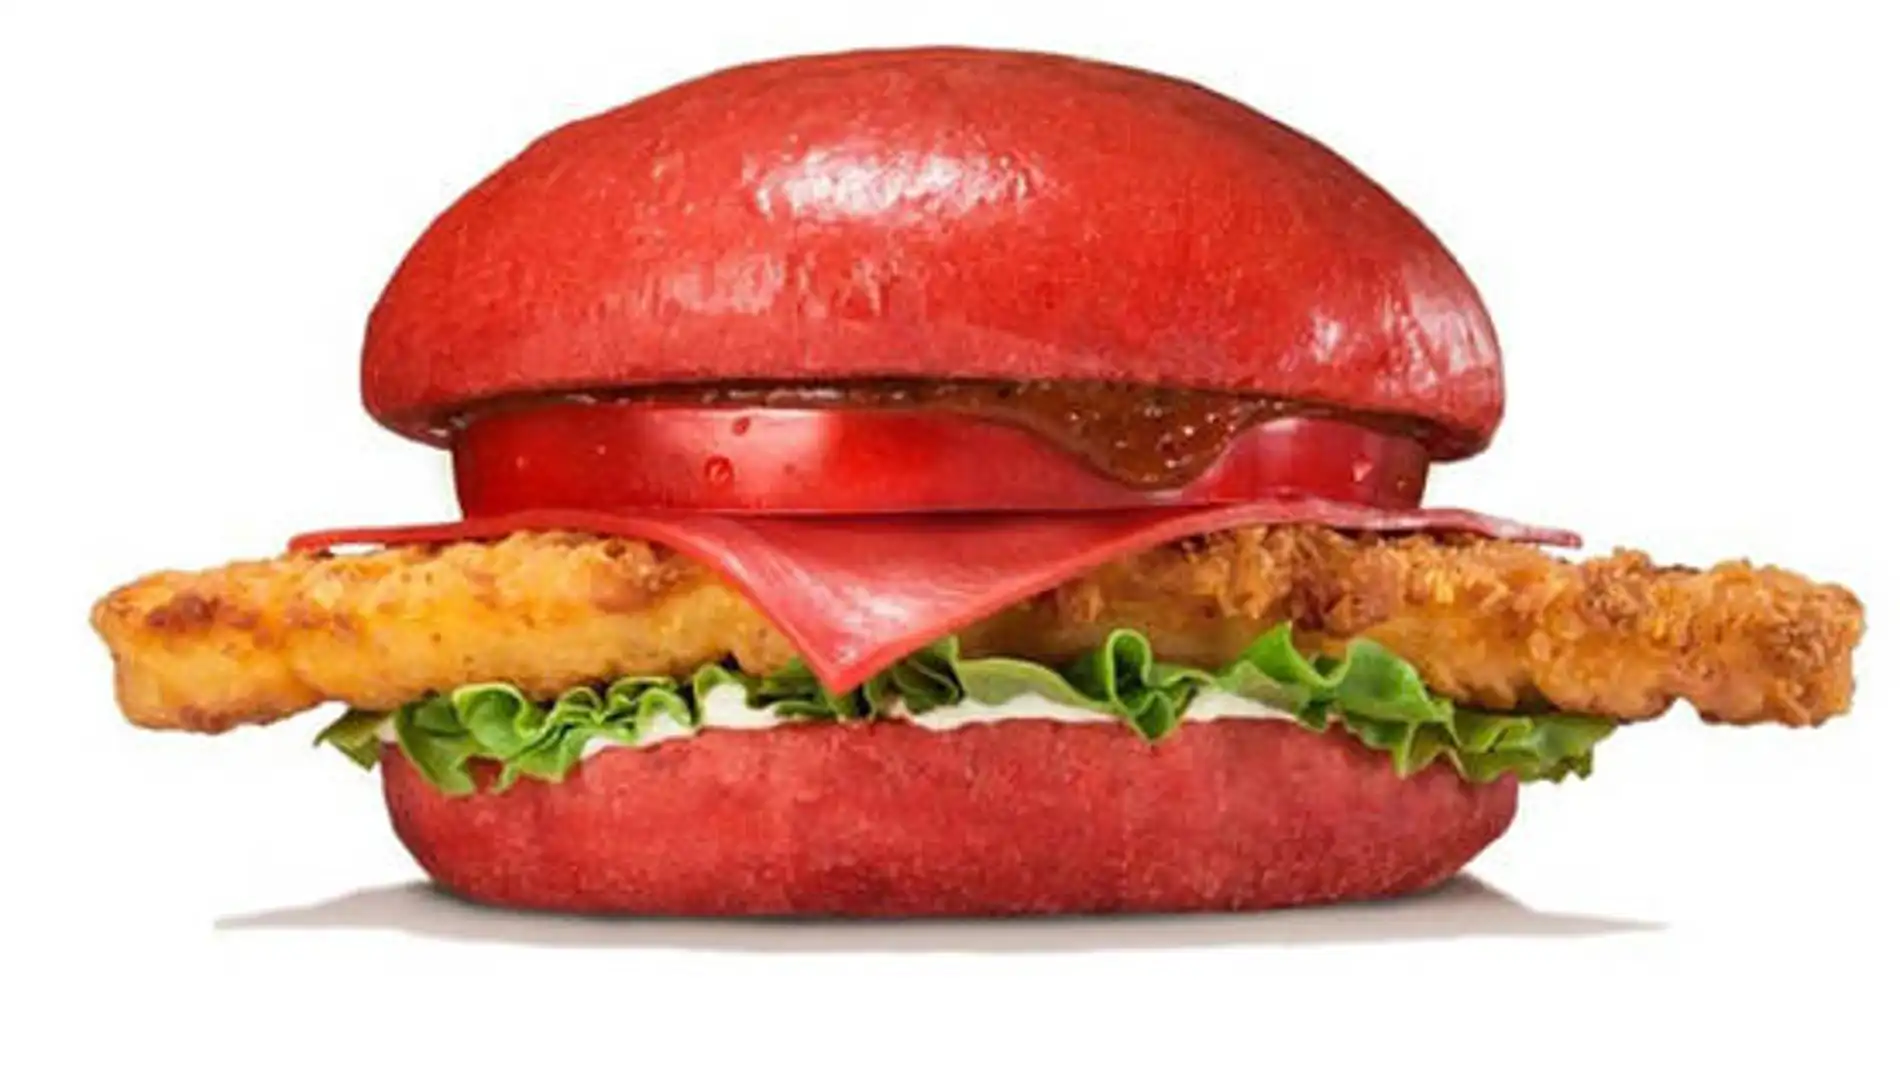 La hamburguesa roja del infierno de Burger King.